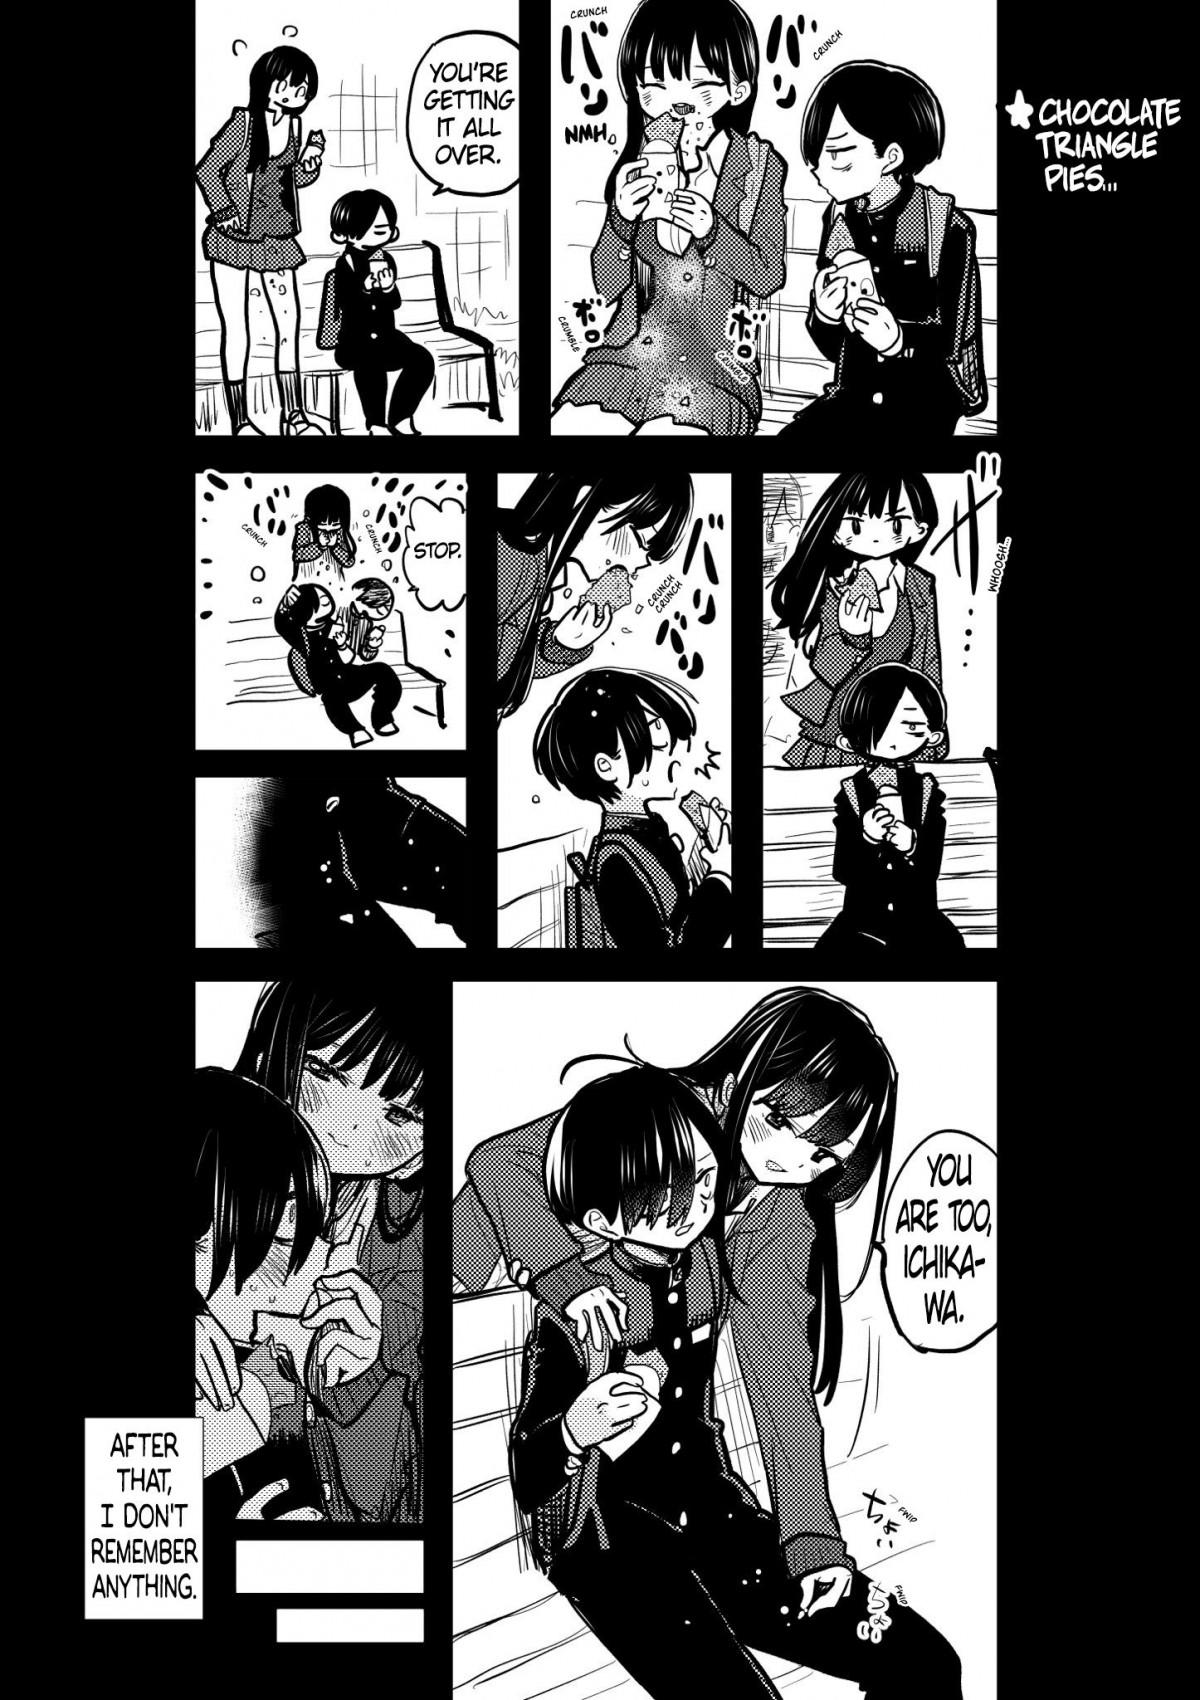 Boku no Kokoro no Yabai Yatsu Vol.10 Ch.131 Page 6 - Mangago